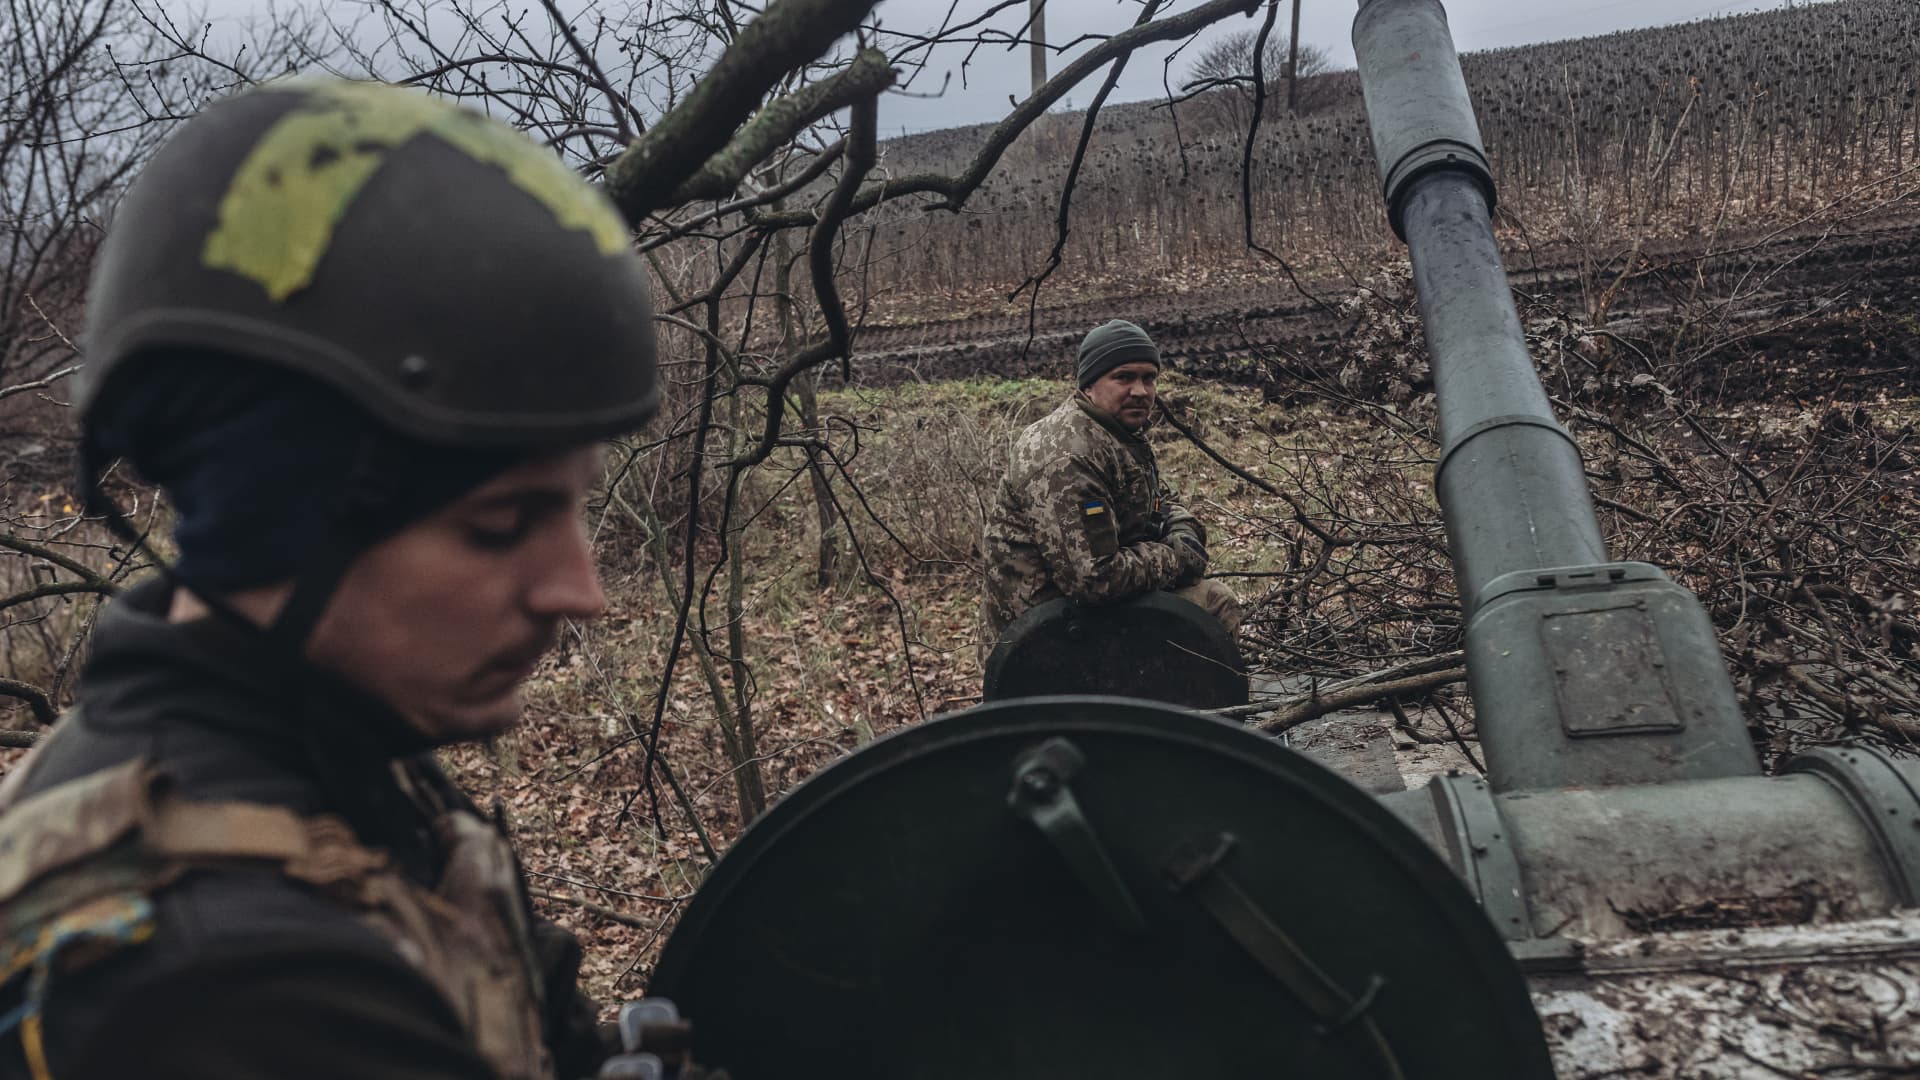 खाइयाँ, कीचड़ और मौत: एक यूक्रेनी युद्धक्षेत्र प्रथम विश्व युद्ध से बाहर की तरह दिखता है